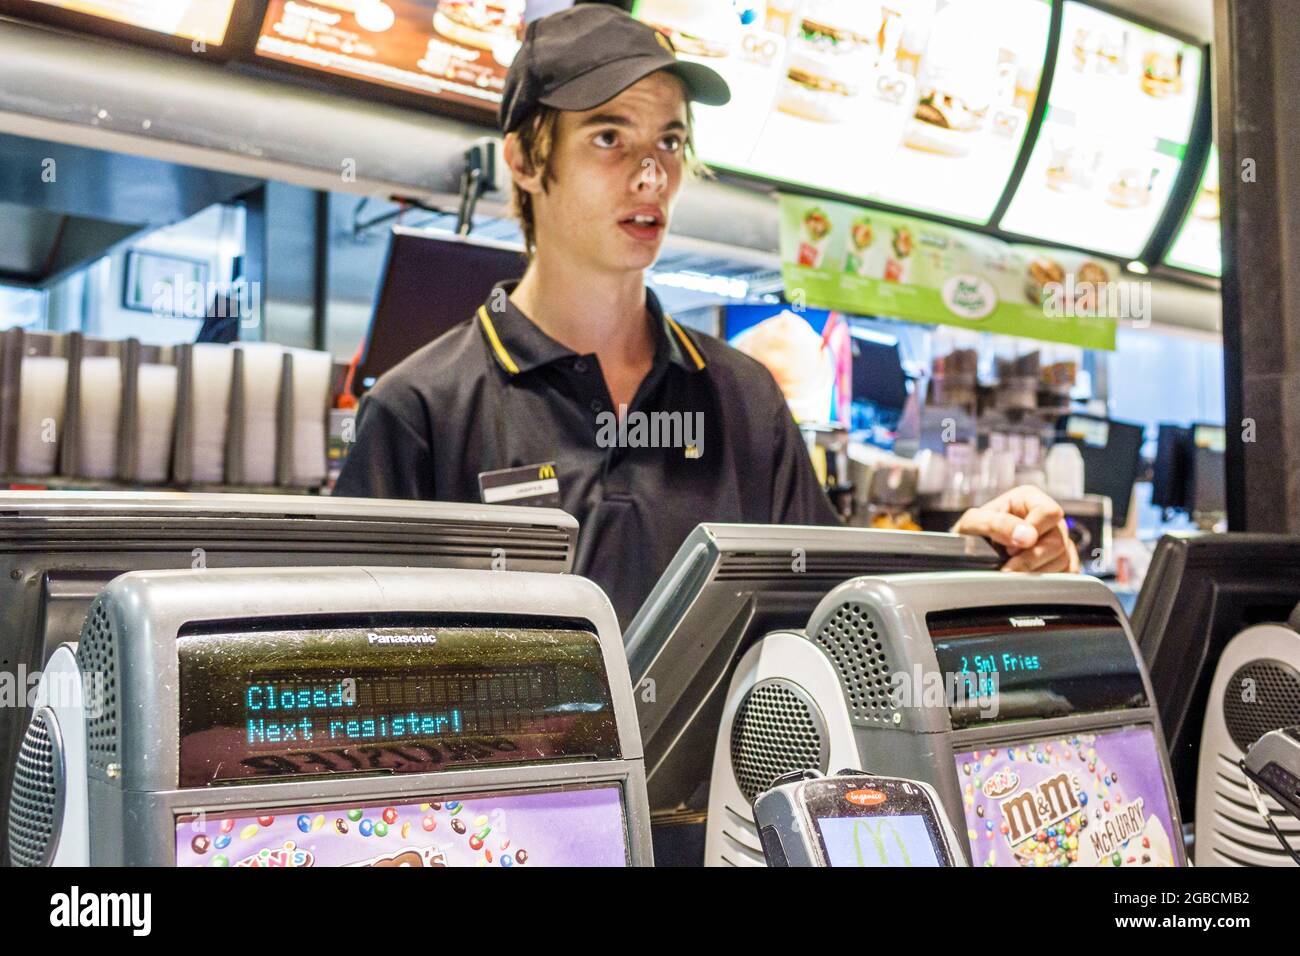 Sydney Australien, Bondi McDonald's Restaurant Fast-Food-Kasse, jugendlicher Teenager, junger, männlicher Angestellter, der die Arbeit übernimmt, insid Stockfoto